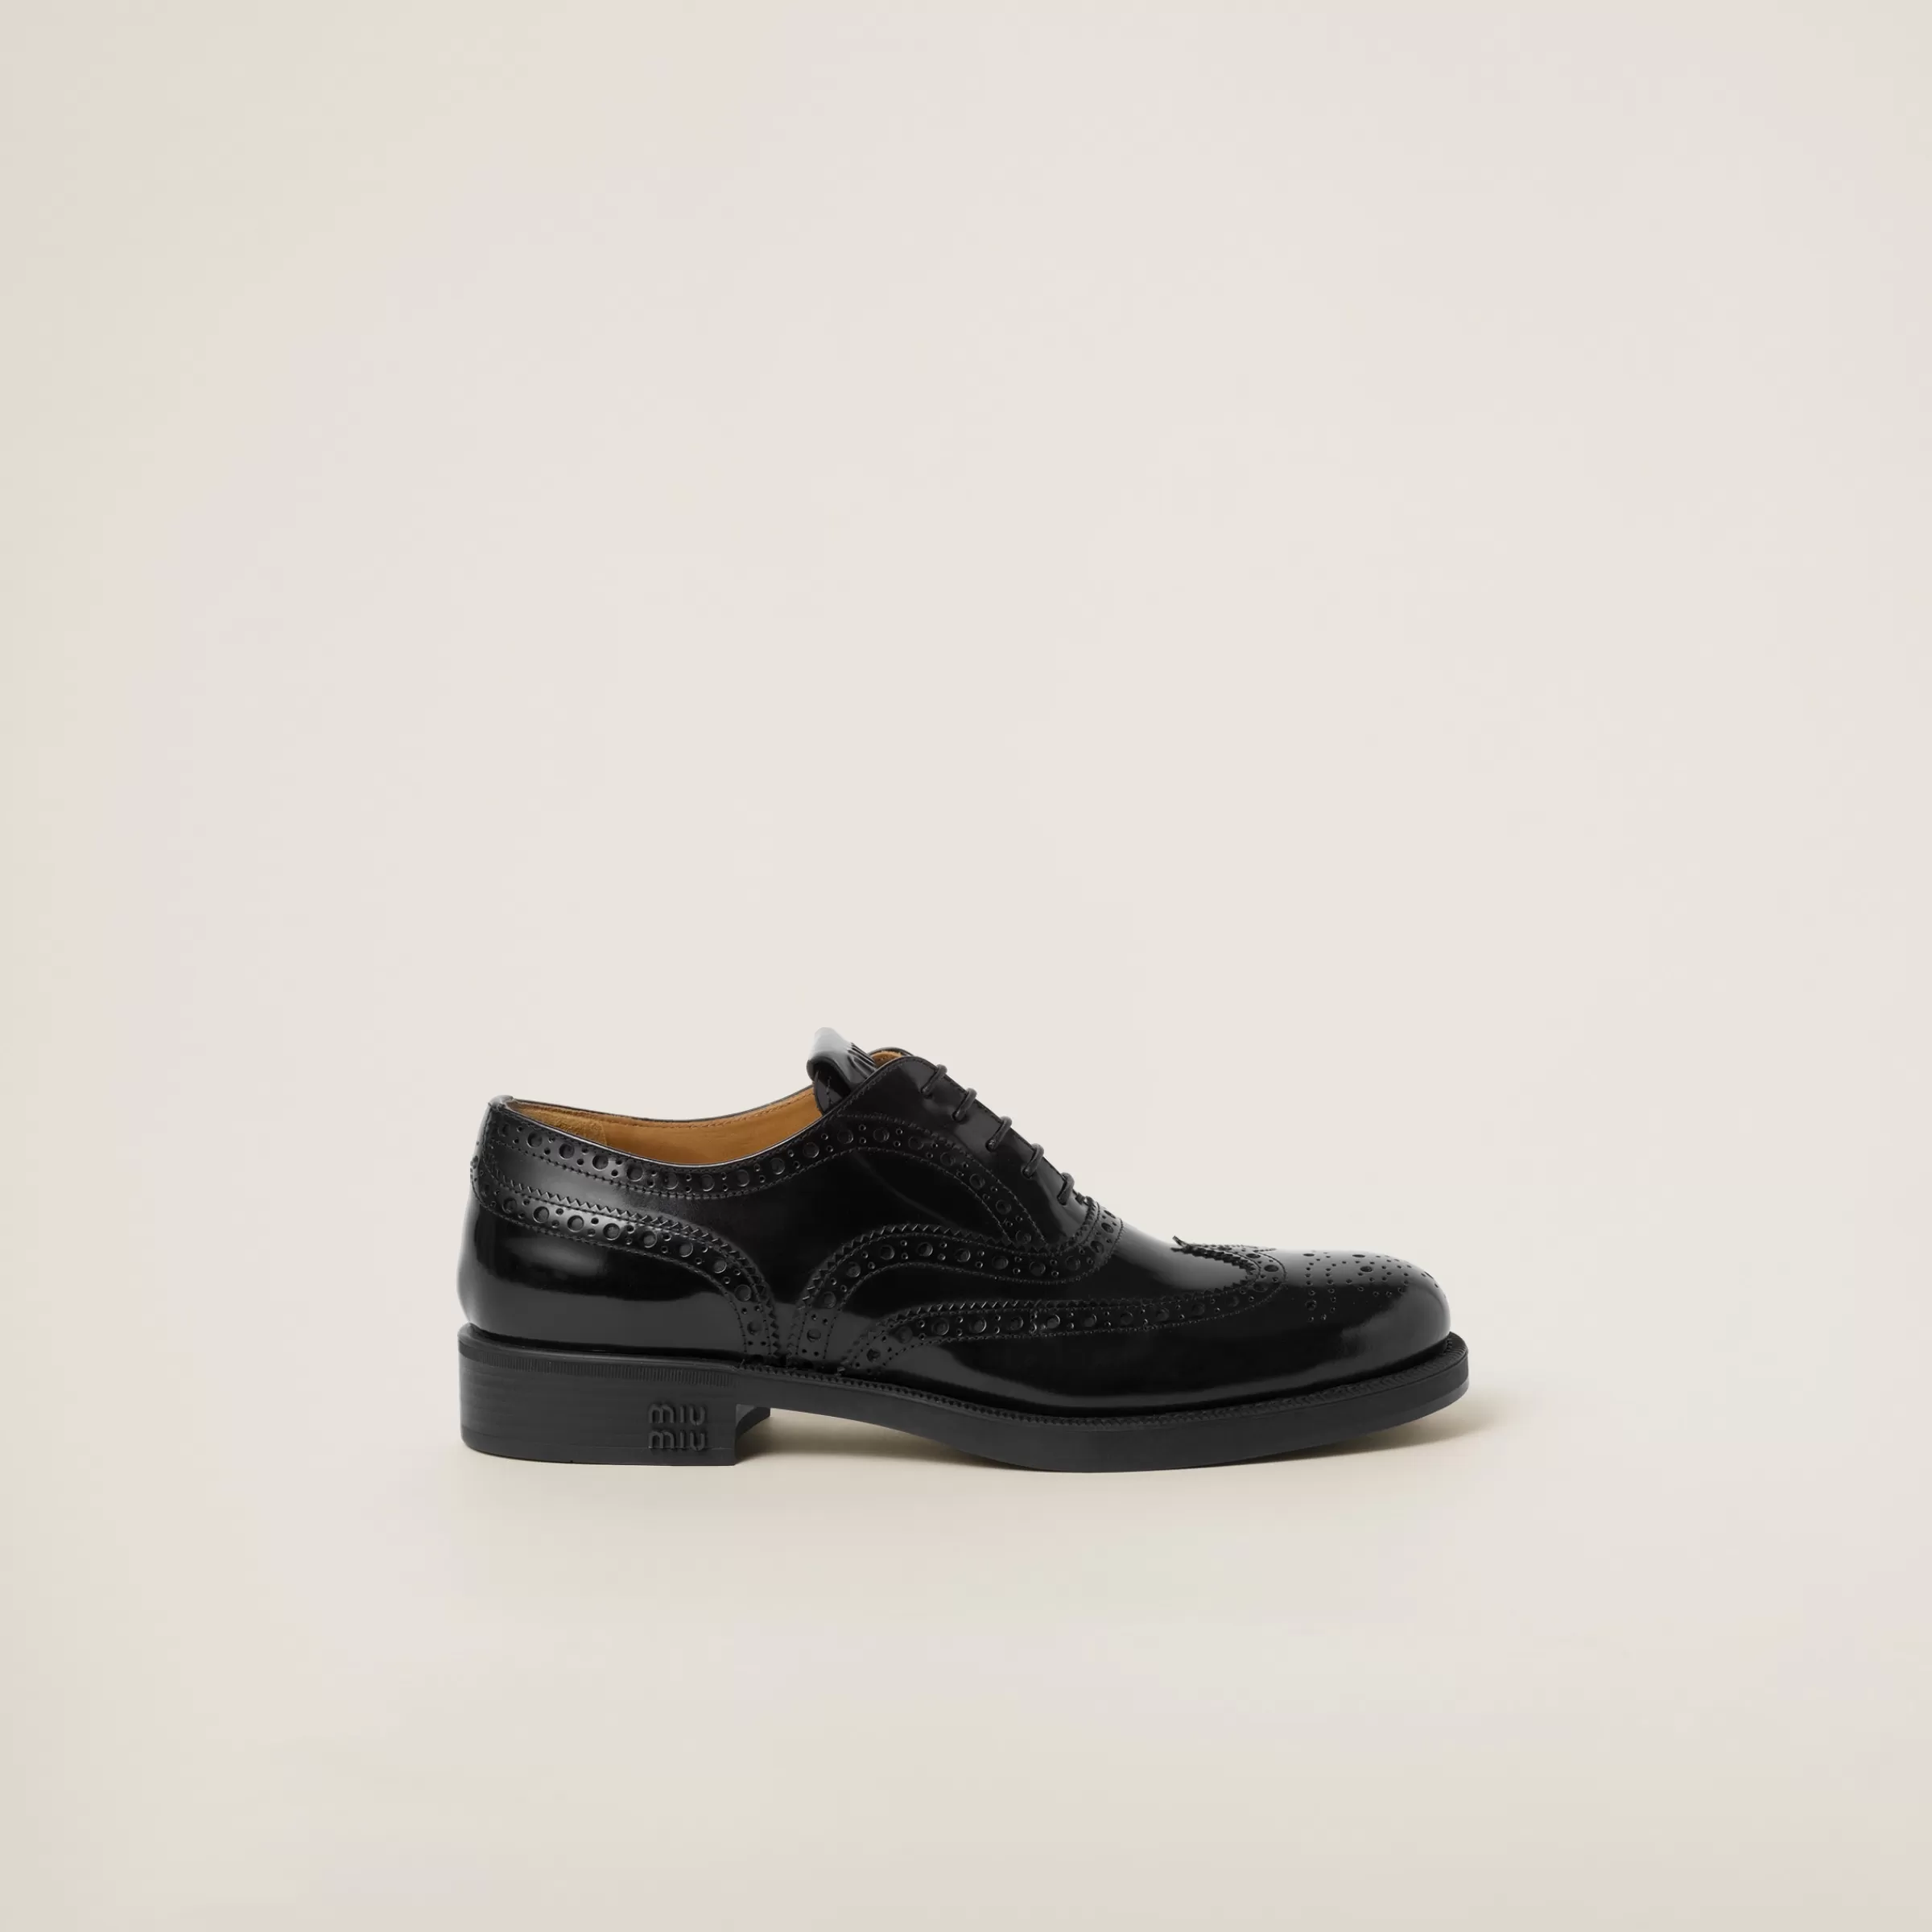 Miu Miu Church's X Brushed Leather Oxford Brogue Shoes |